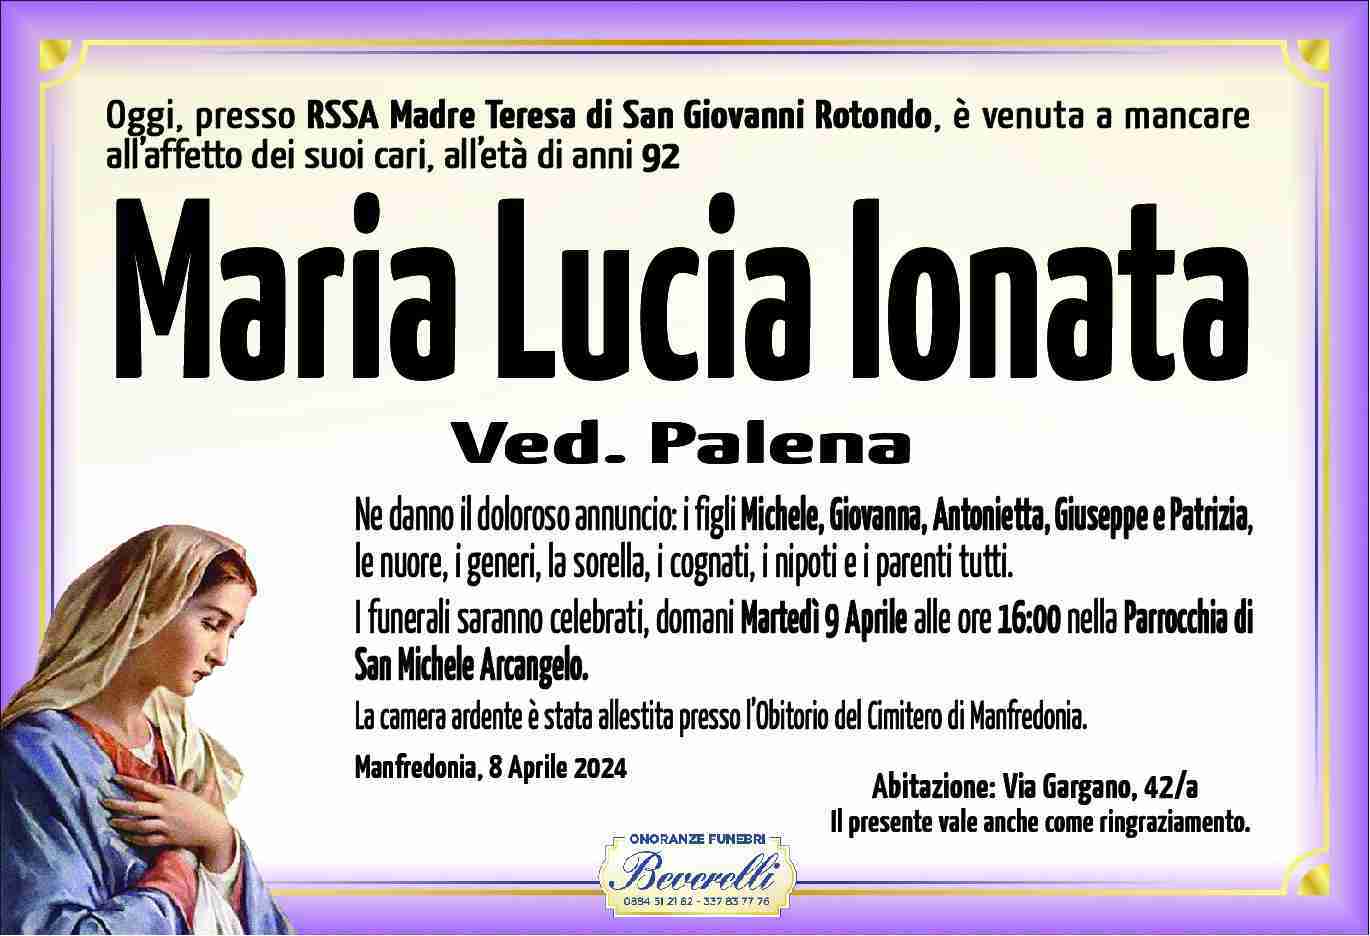 Maria Lucia Ionata